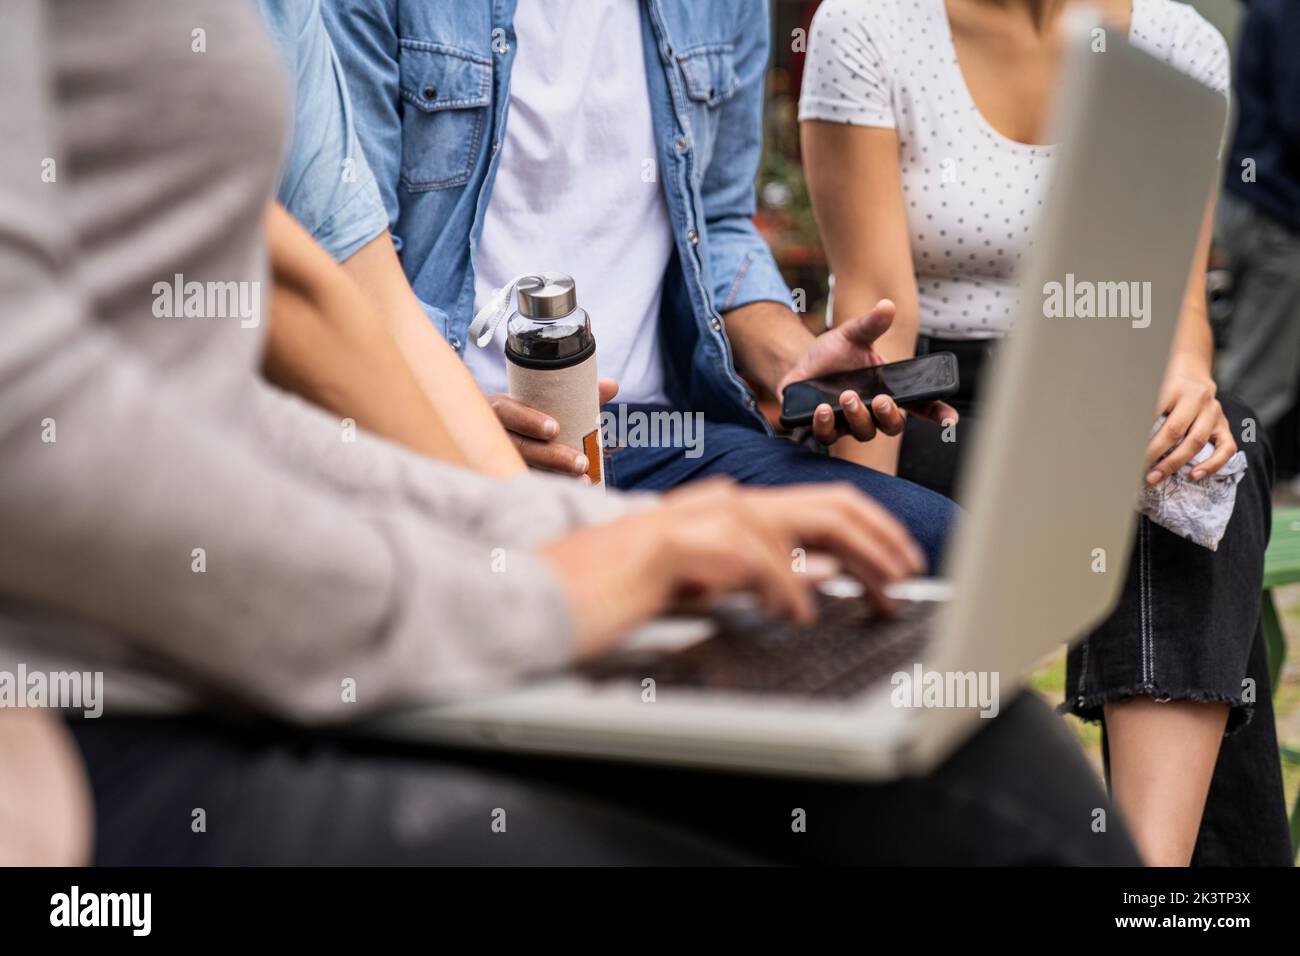 Nahaufnahme der Hände mehrerer Personen, die Smartphones und Laptops halten Stockfoto